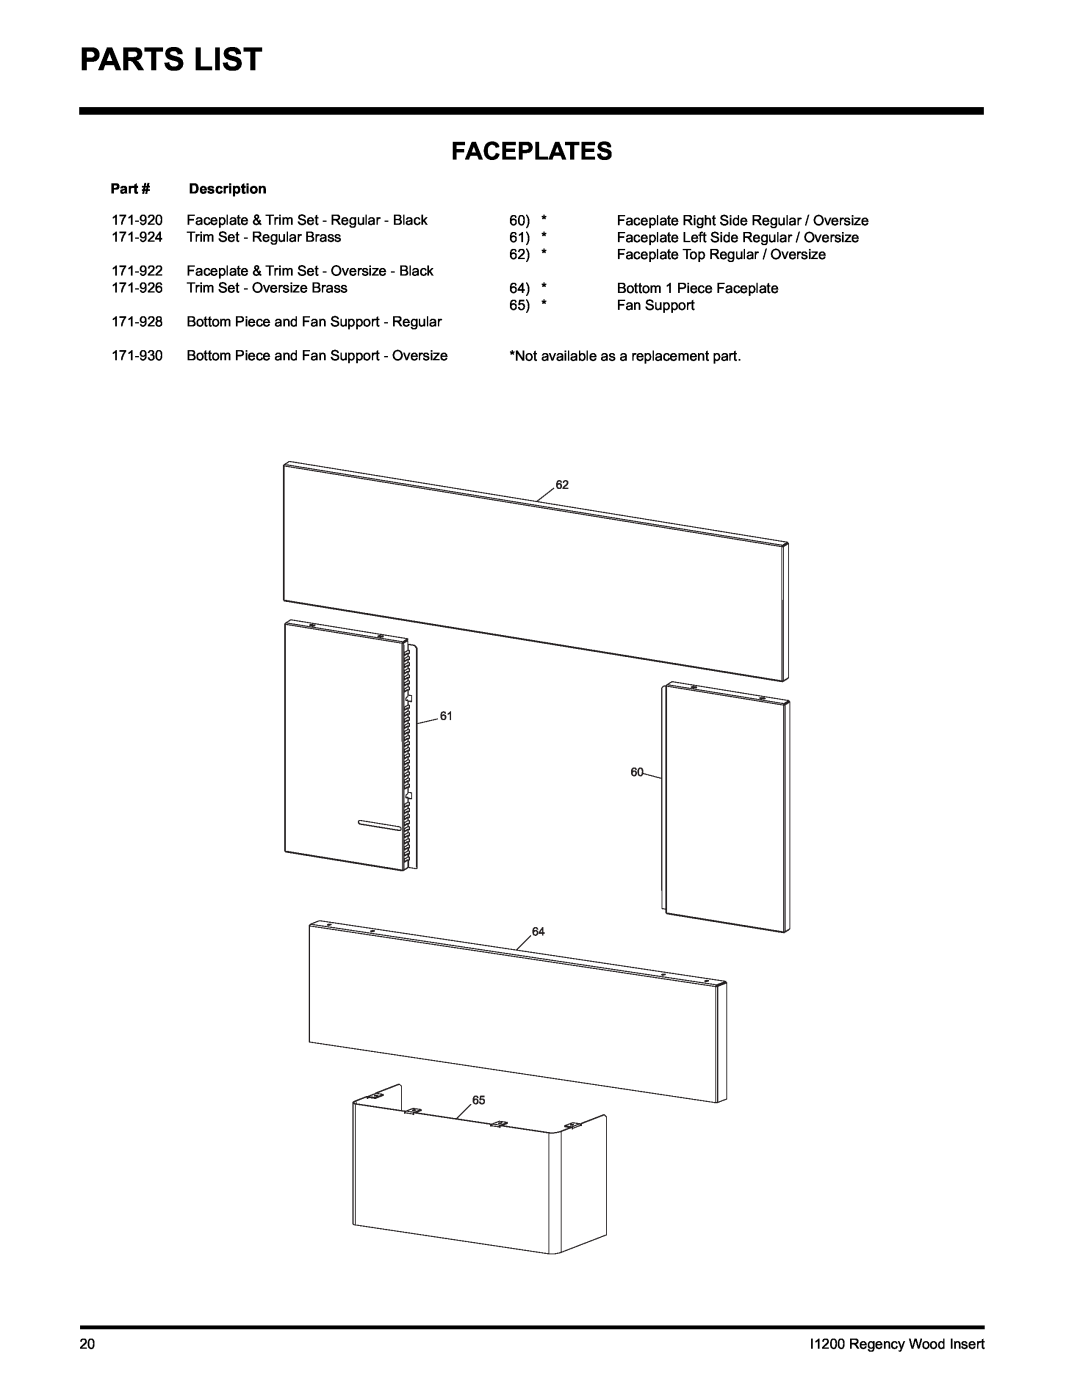 Regency I1200S installation manual Parts List, Faceplates, Description 